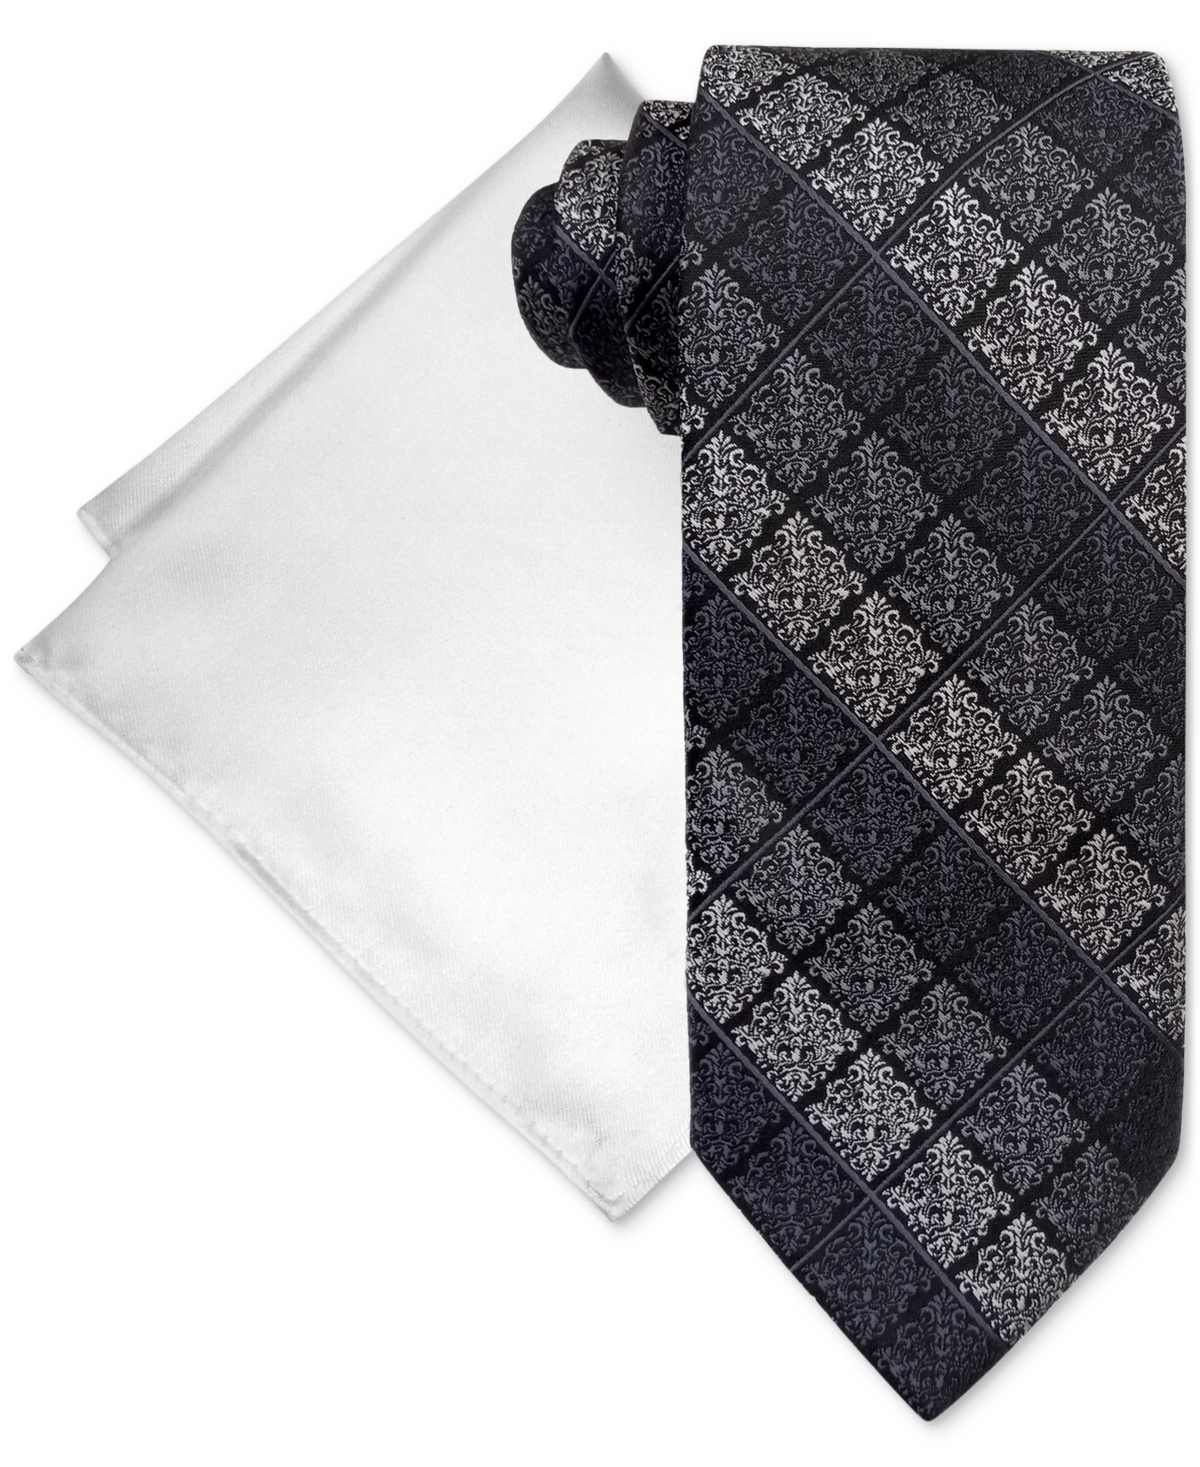 Men's Stripe Tie & Pocket Square Set - Black